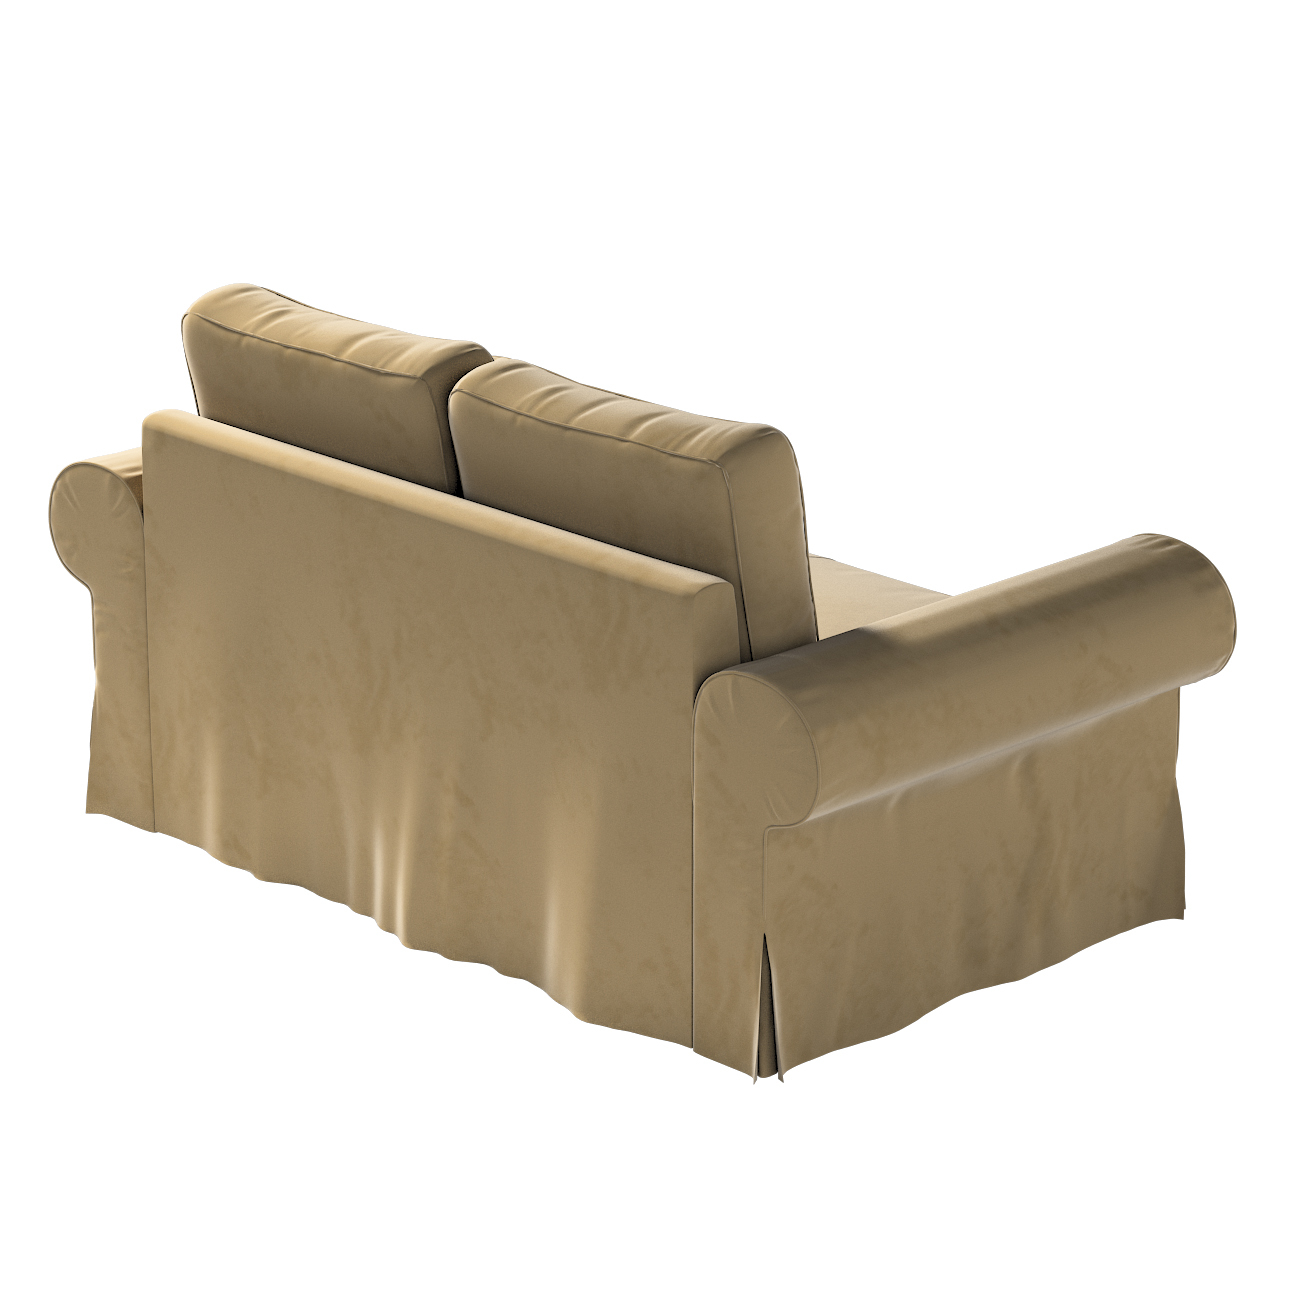 Bezug für Backabro 2-Sitzer Sofa ausklappbar, hellbraun, Bezug für Backabro günstig online kaufen